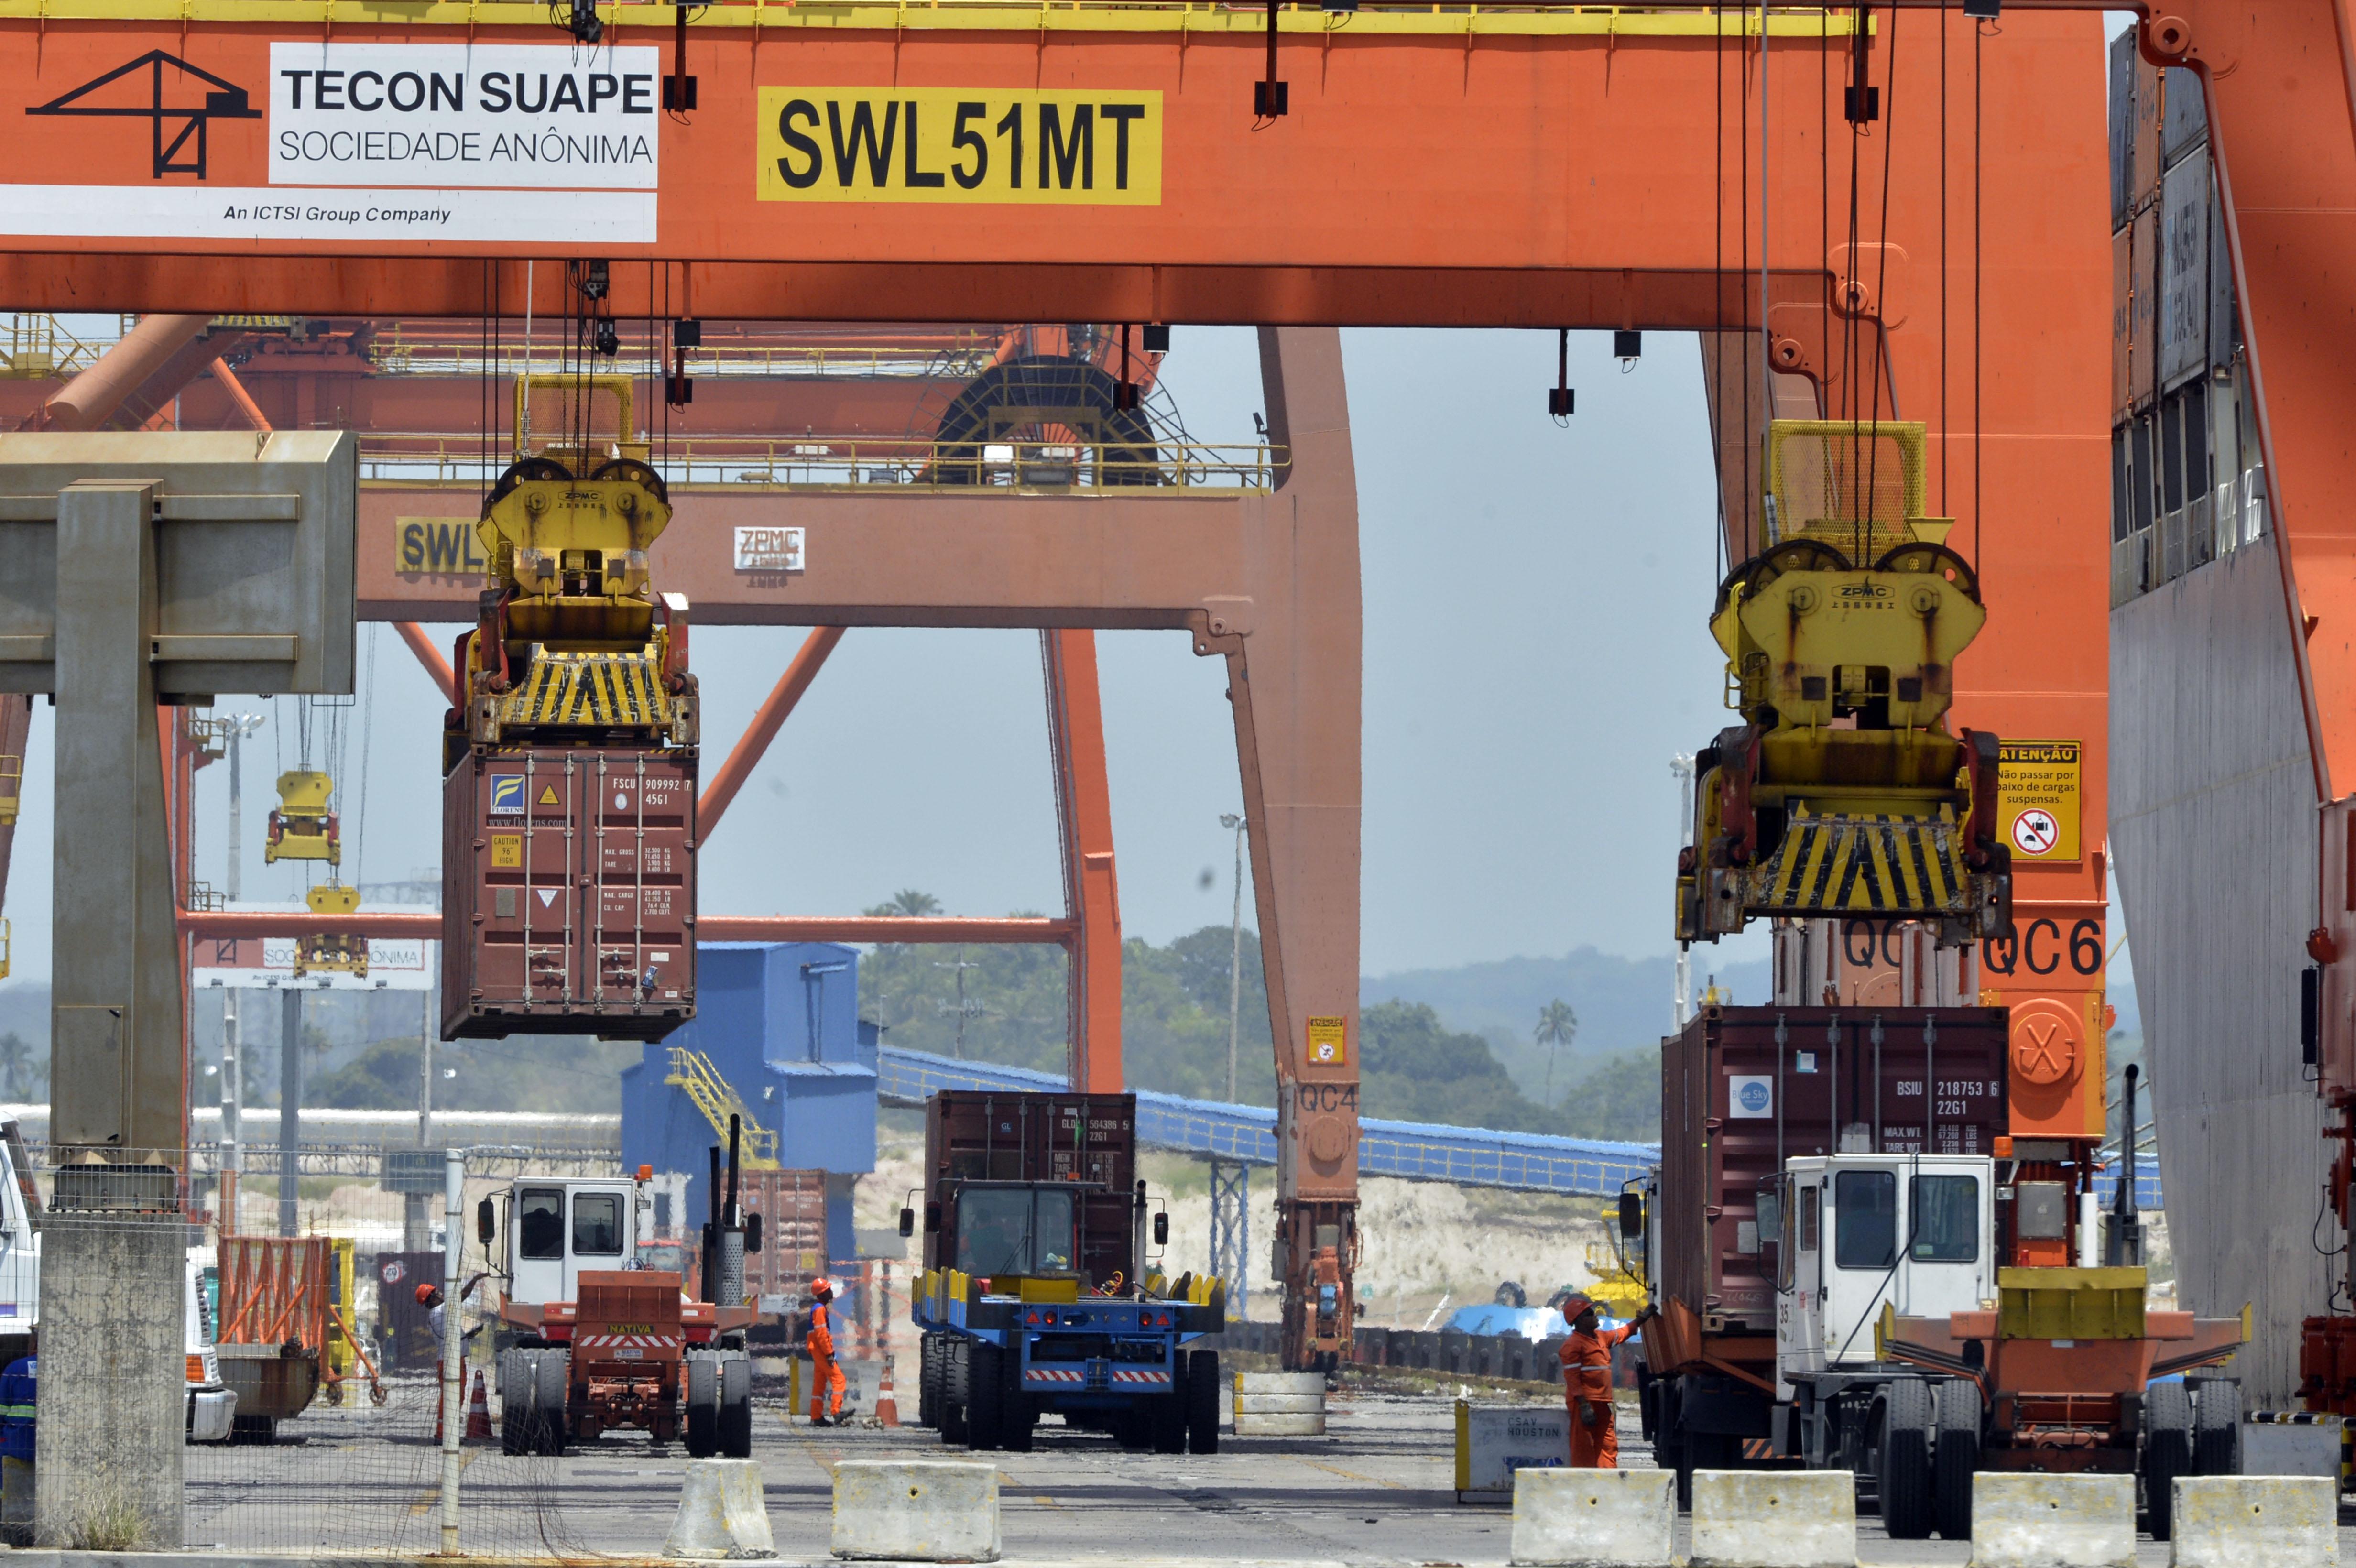 Operação no Porto de Suape. Terminal de containers.Suape (PE) 15.10.2014 - Foto: José Paulo Lacerda *** Local Caption *** Porto de Suape